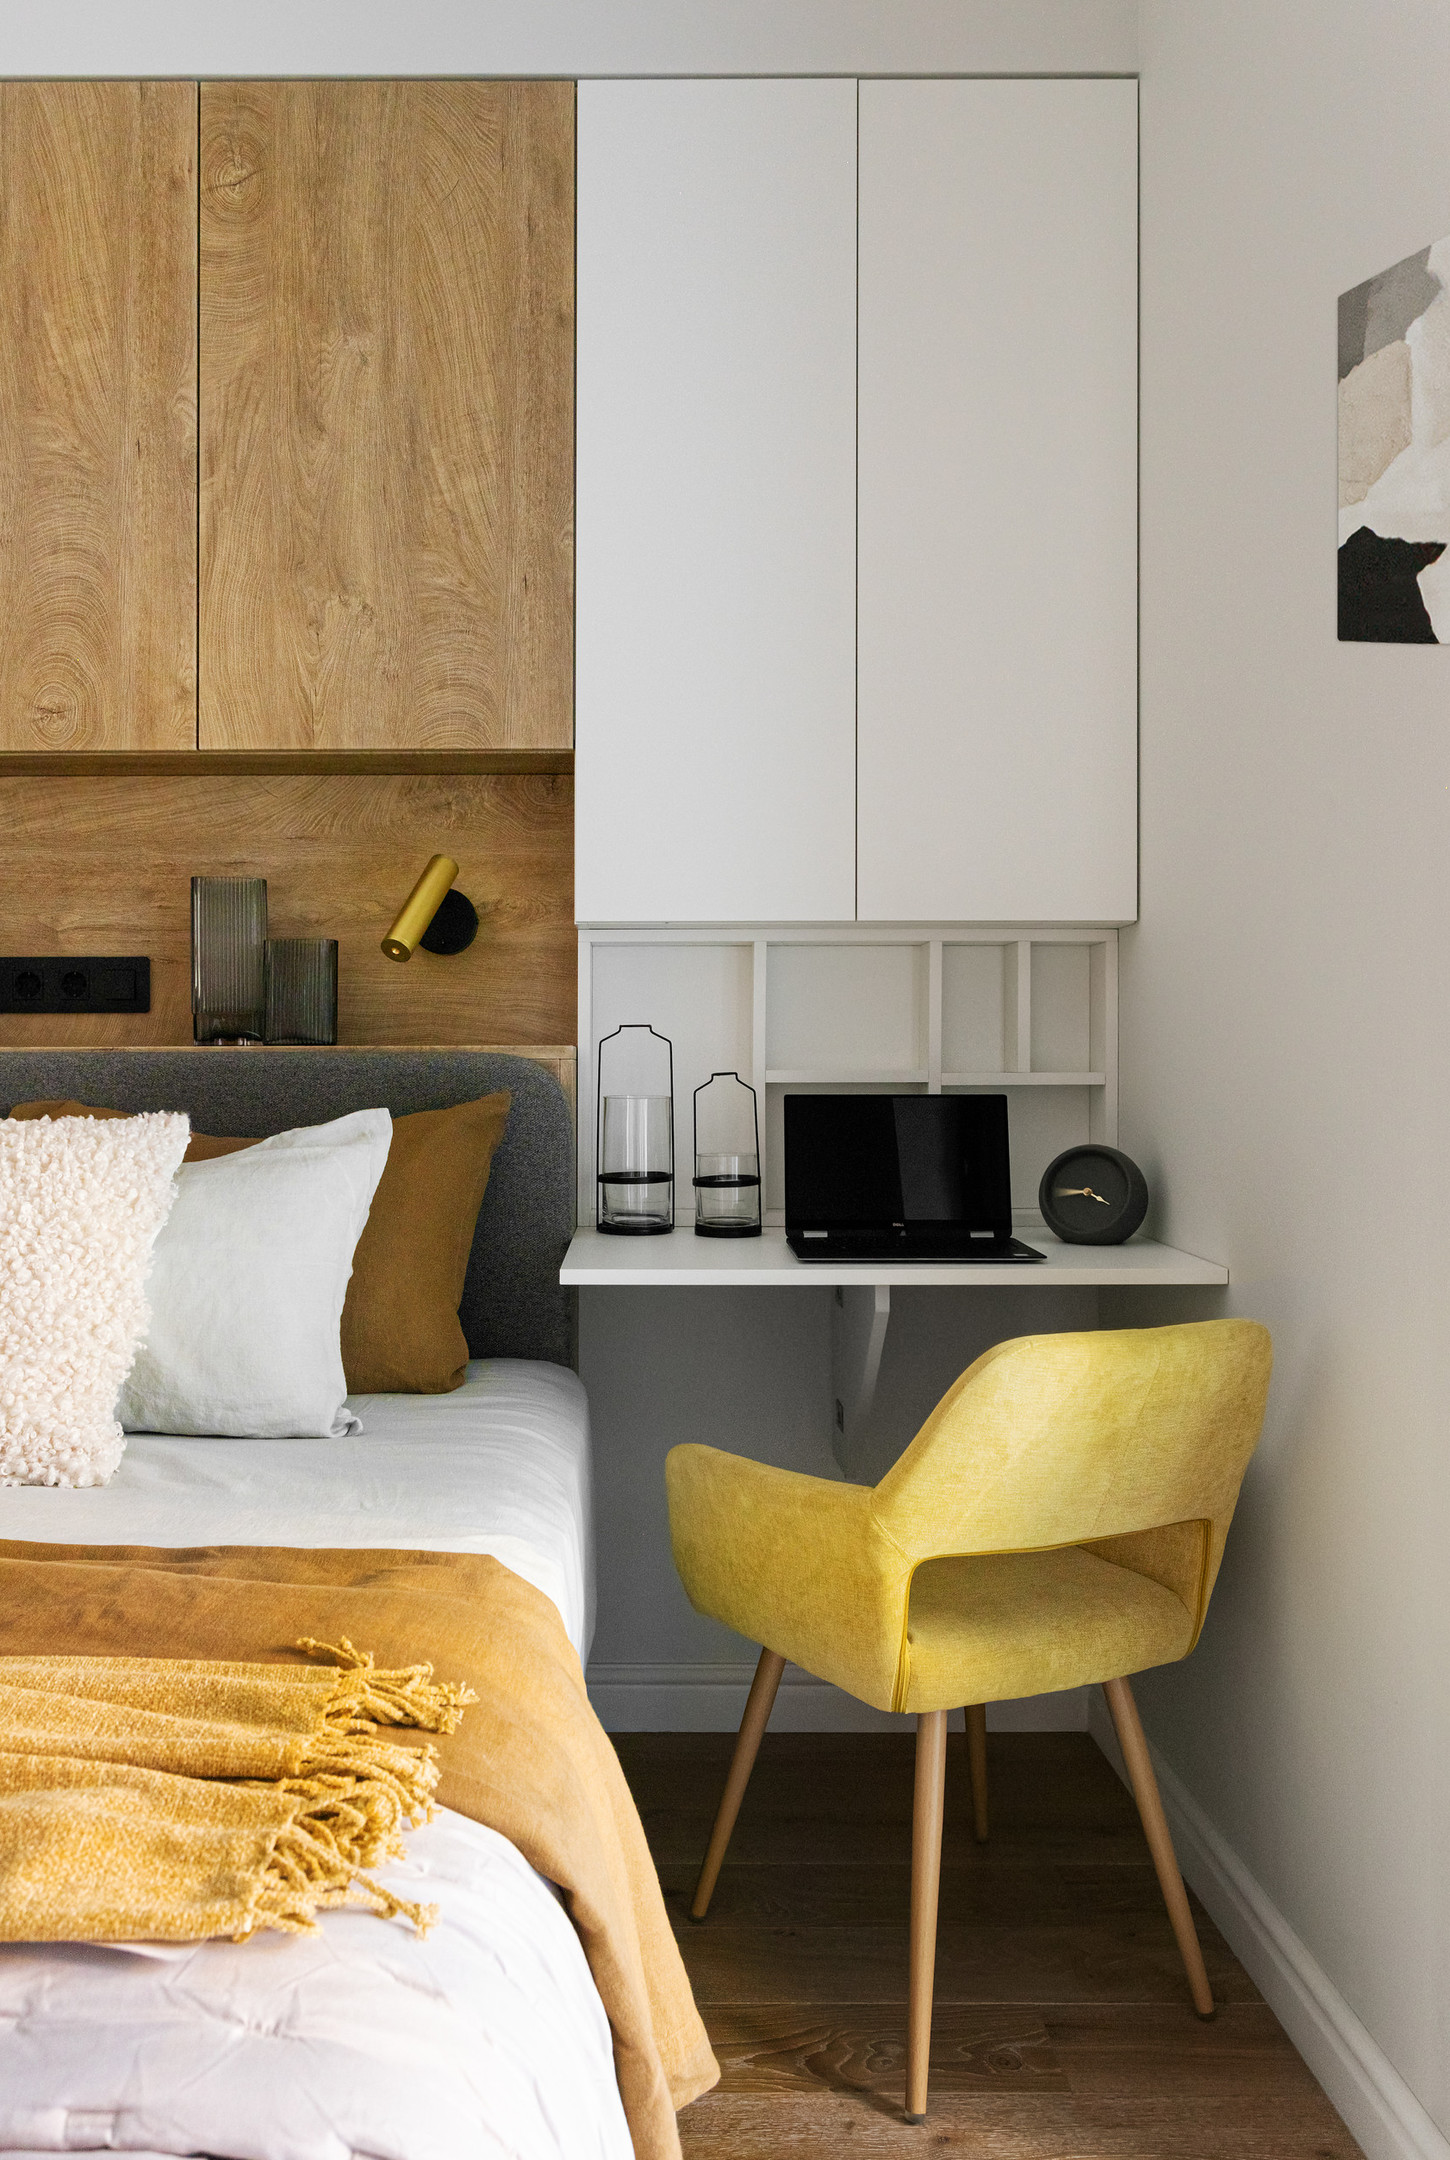 4 giải pháp thiết kế nội thất thông minh cho nhà “chật vẫn chất” - Ảnh 7